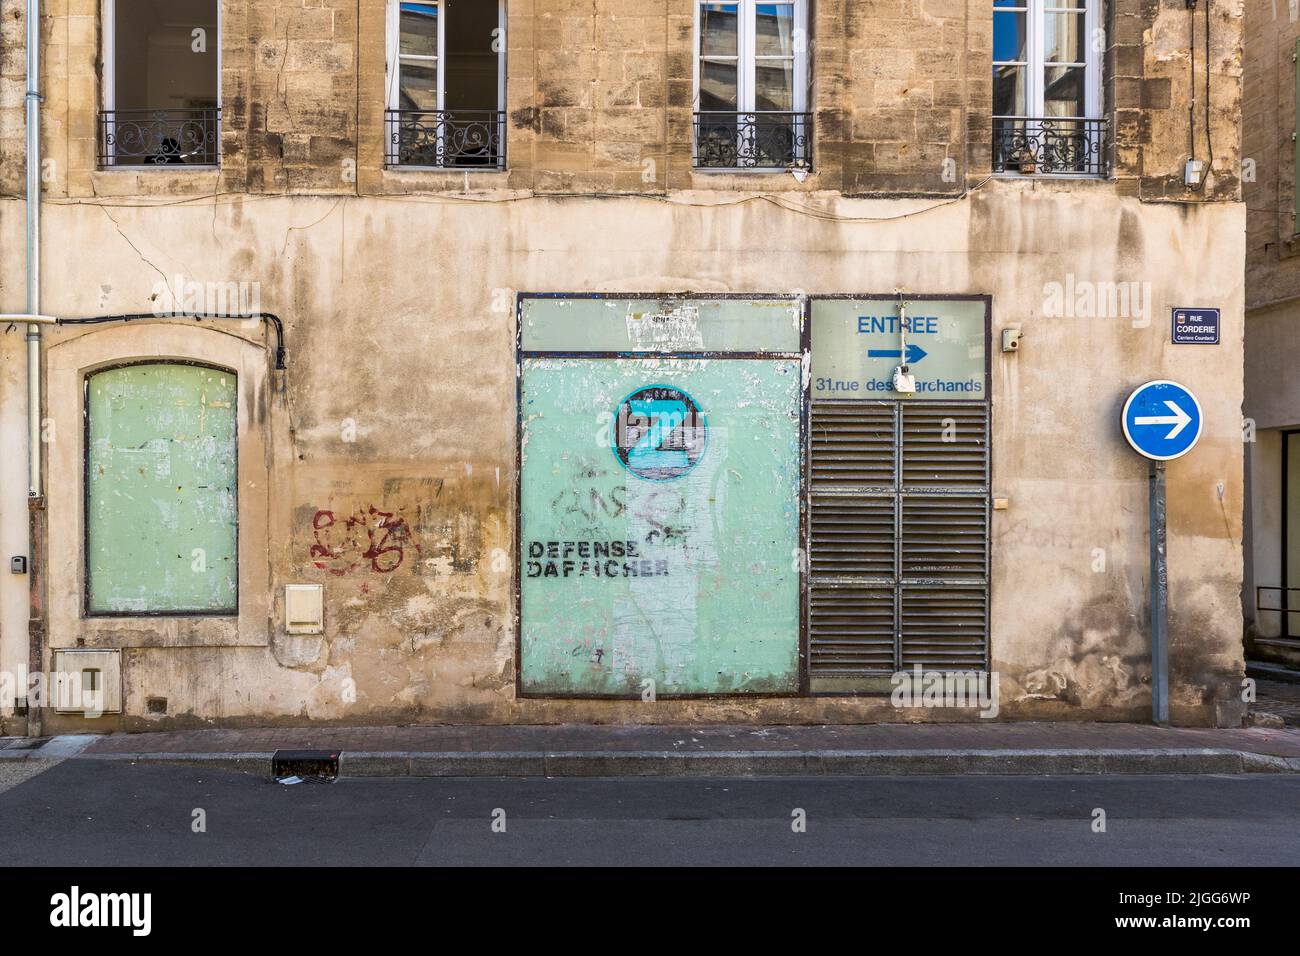 Heruntergekommenes Schaufenster, auf dem Sie die französischen Schriftzeichen 'defense d'aficher' in Avignon, Frankreich, sehen können Stockfoto